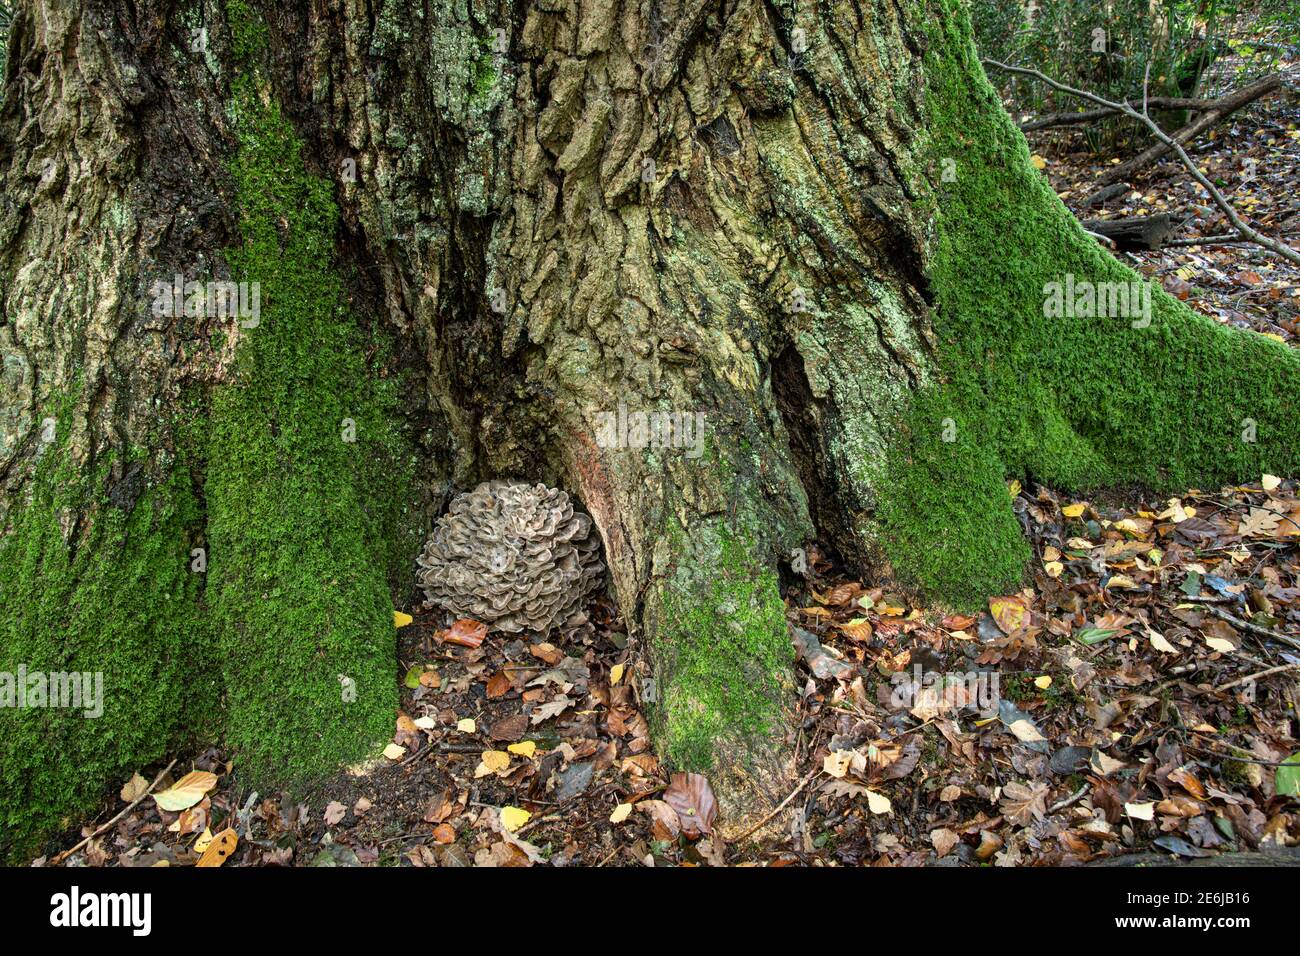 Poule des Bois: Grifolia frondosa. Parasite sur chêne. Sussex, Royaume-Uni. Banque D'Images